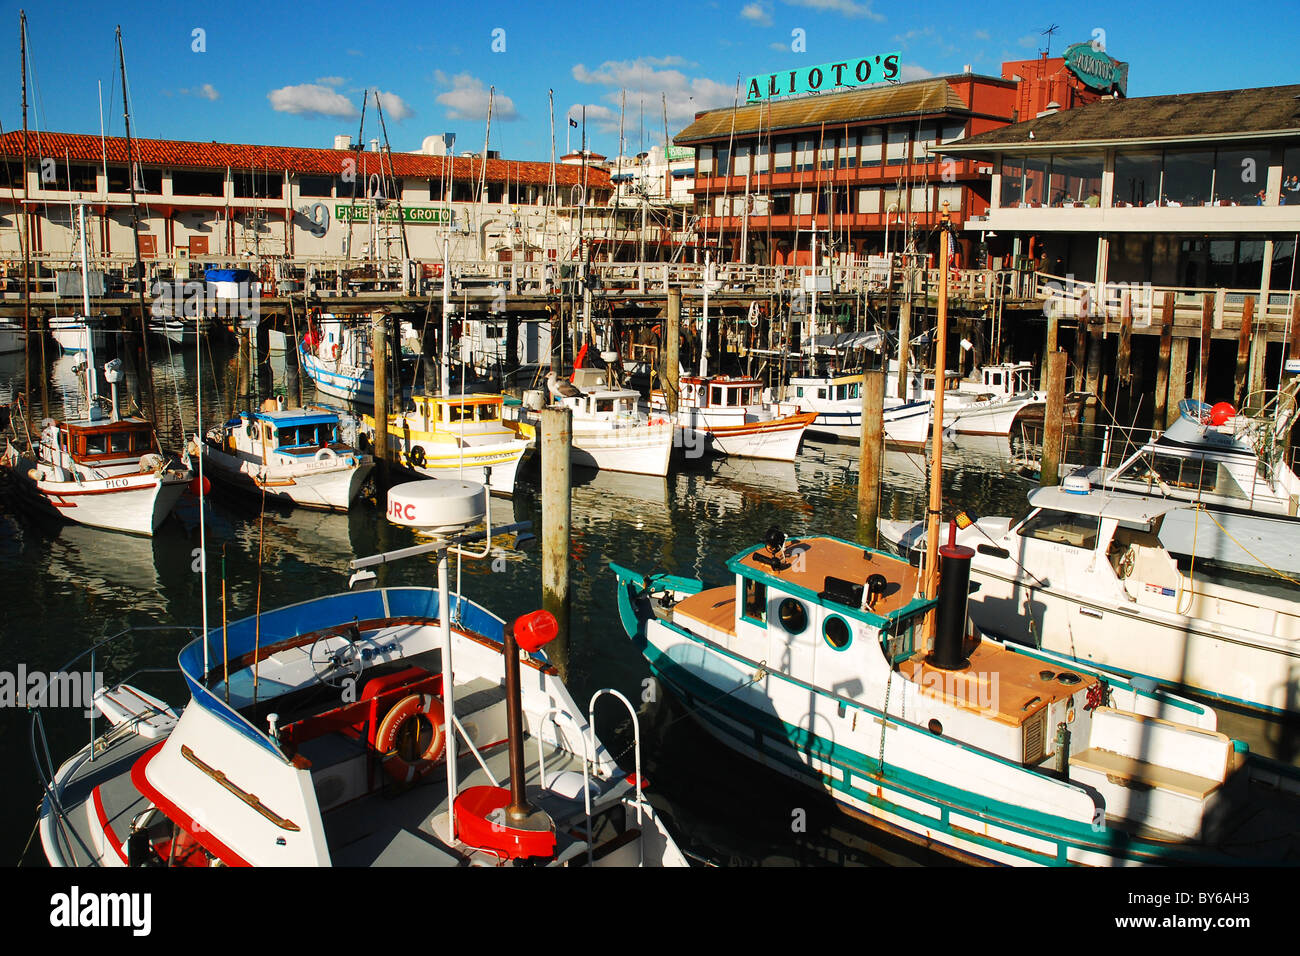 Boats docked outside Alito's Restaurant at San Francisco's Fishermen's Wharf. Stock Photo